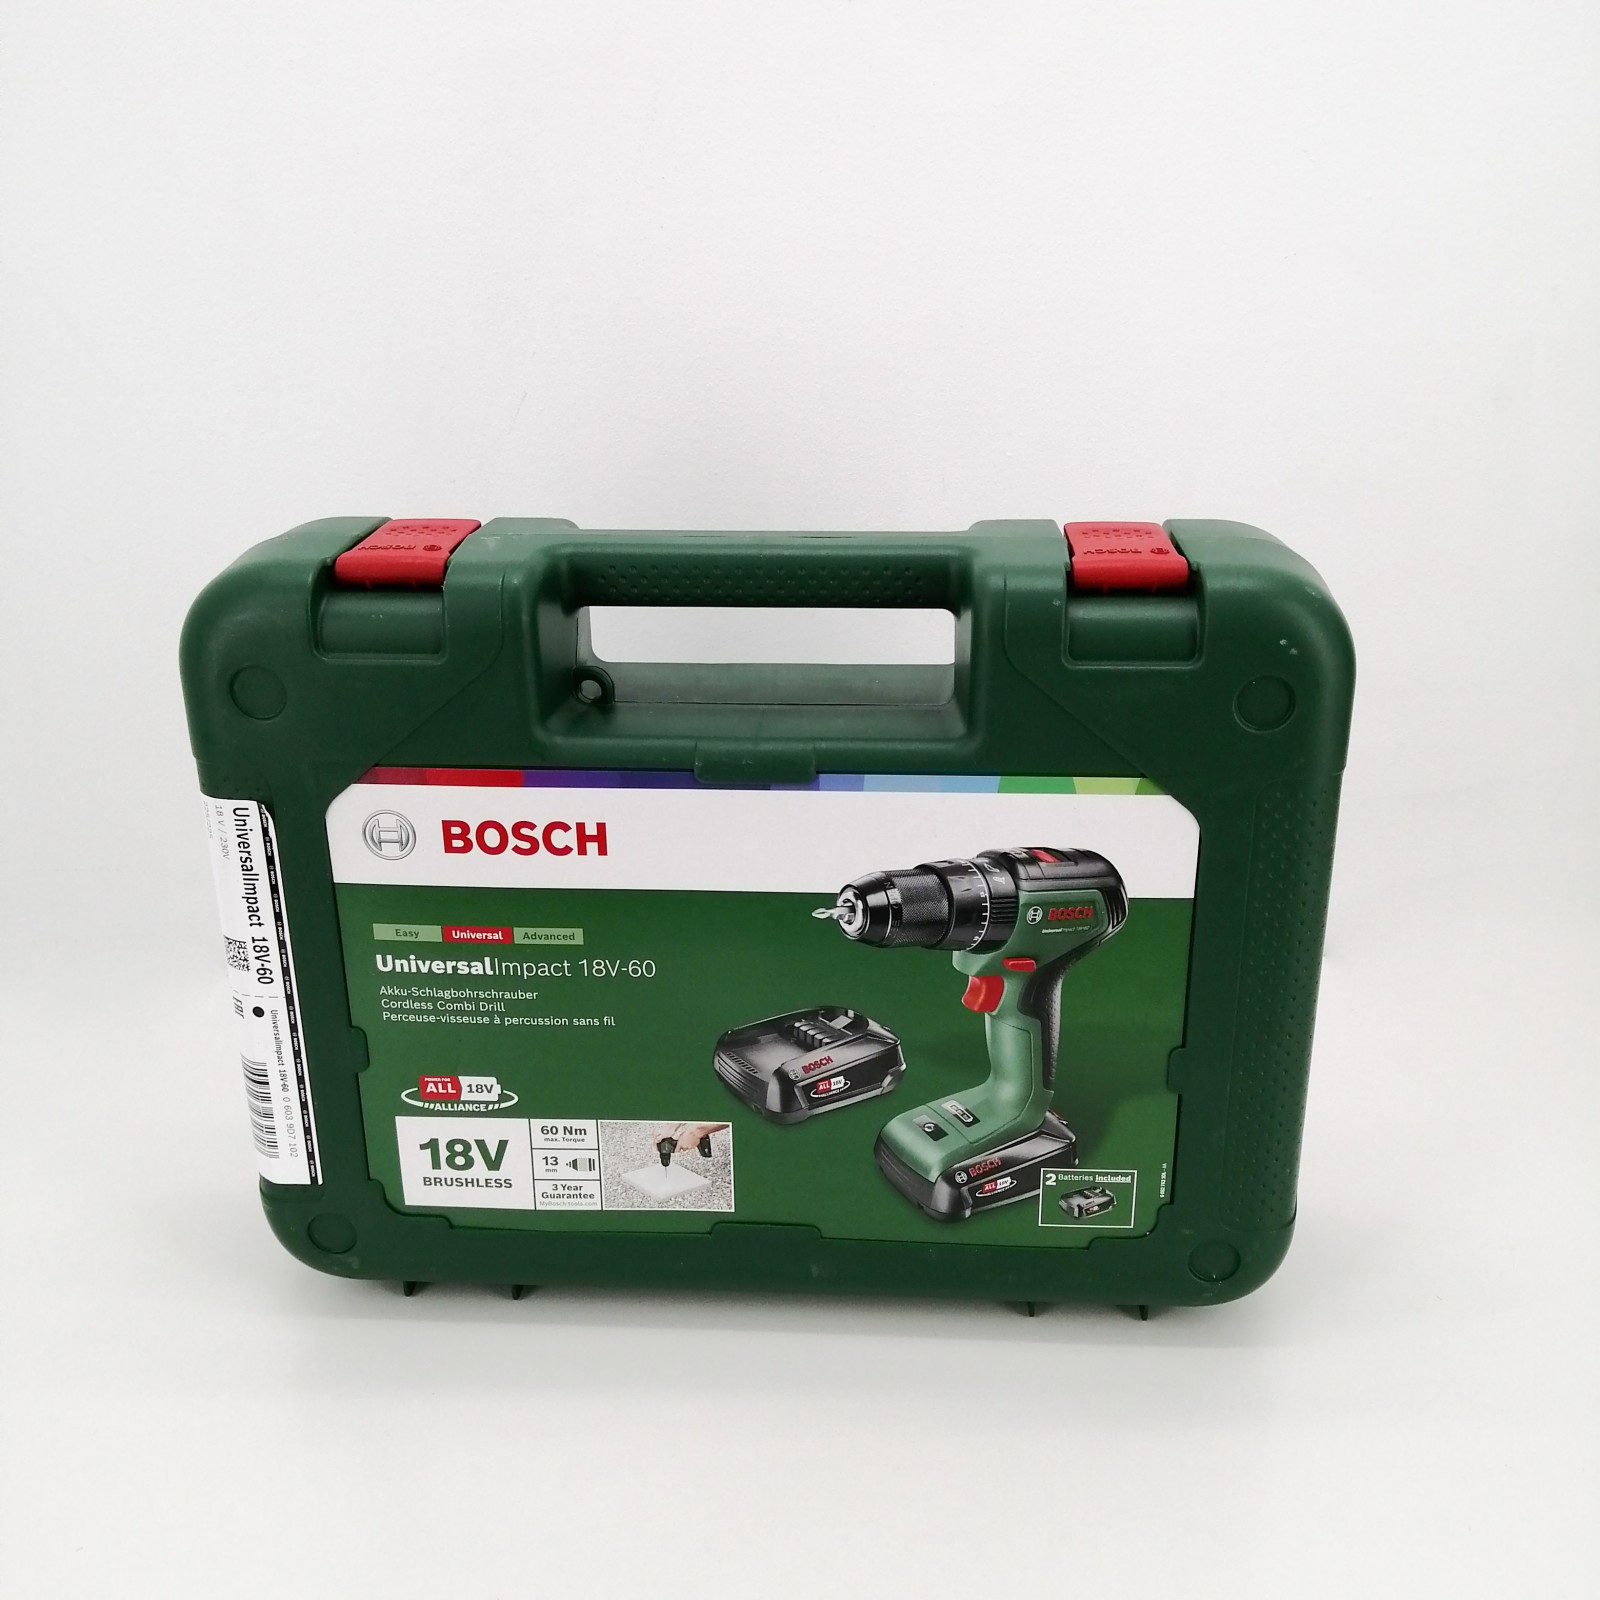 Bosch Home and Garden taladro percutor a batería UniversalImpact 18V-60  (sin batería, sistema de 18